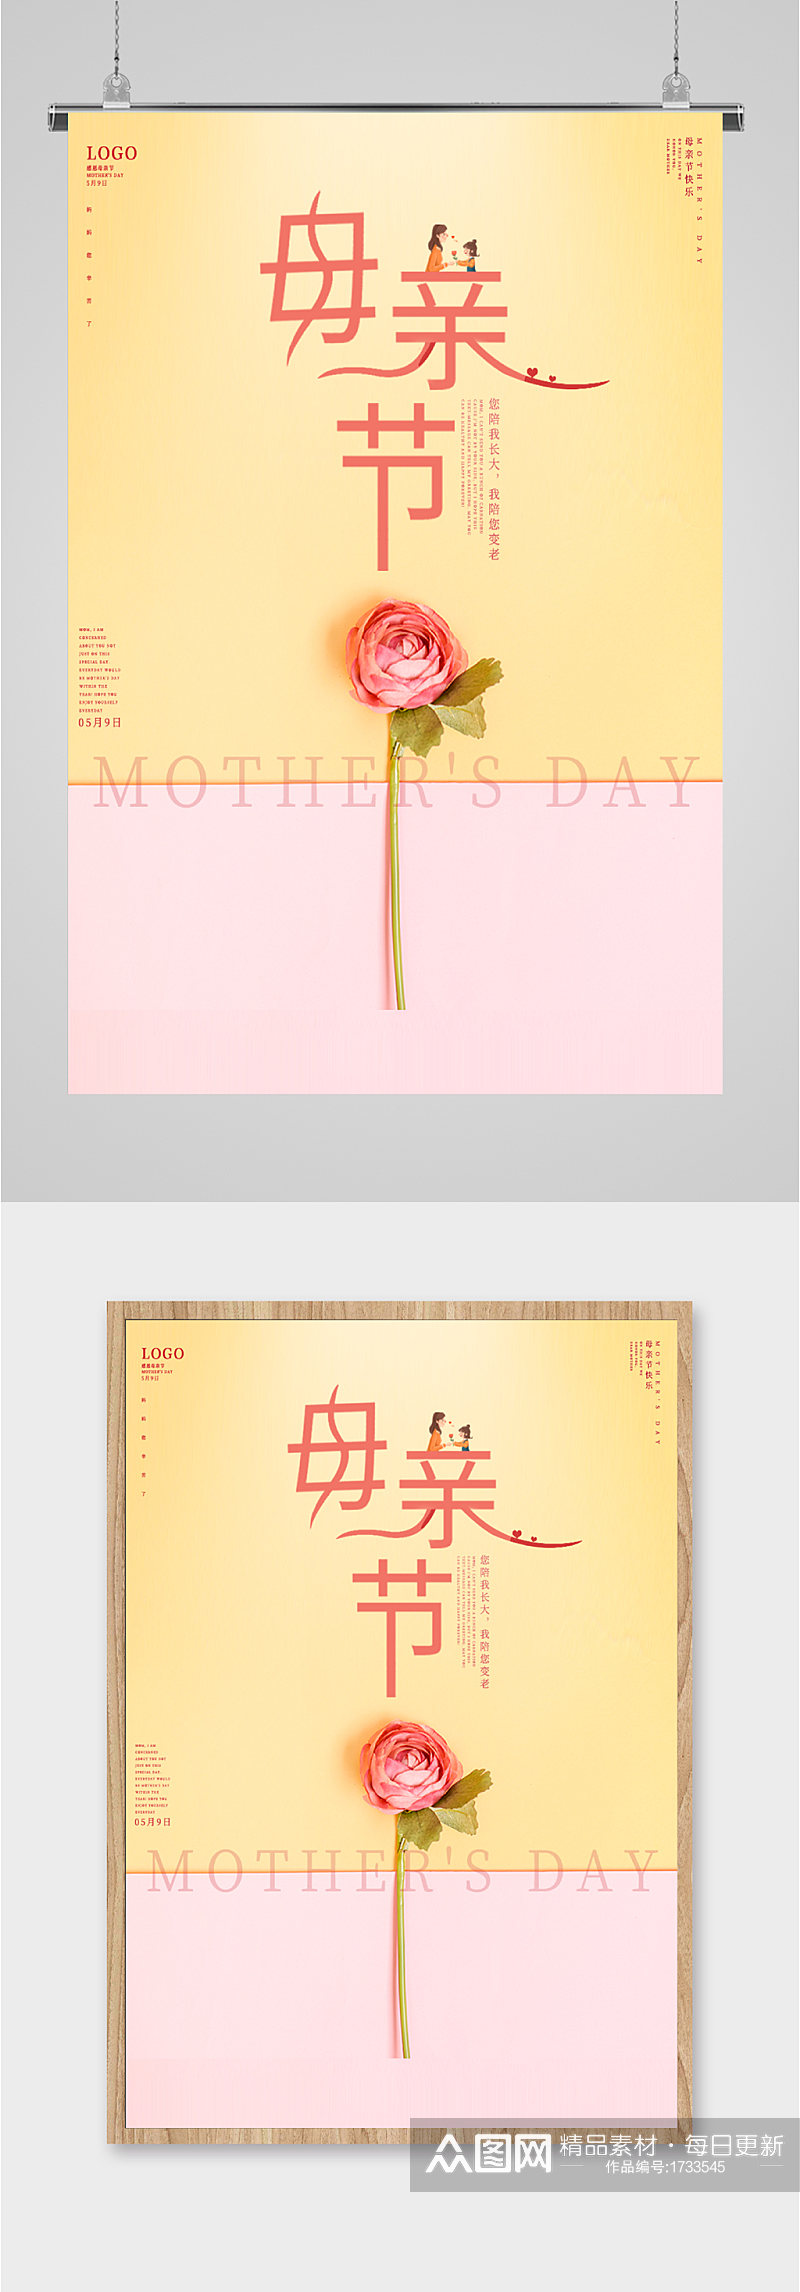 简约母亲节设计海报素材